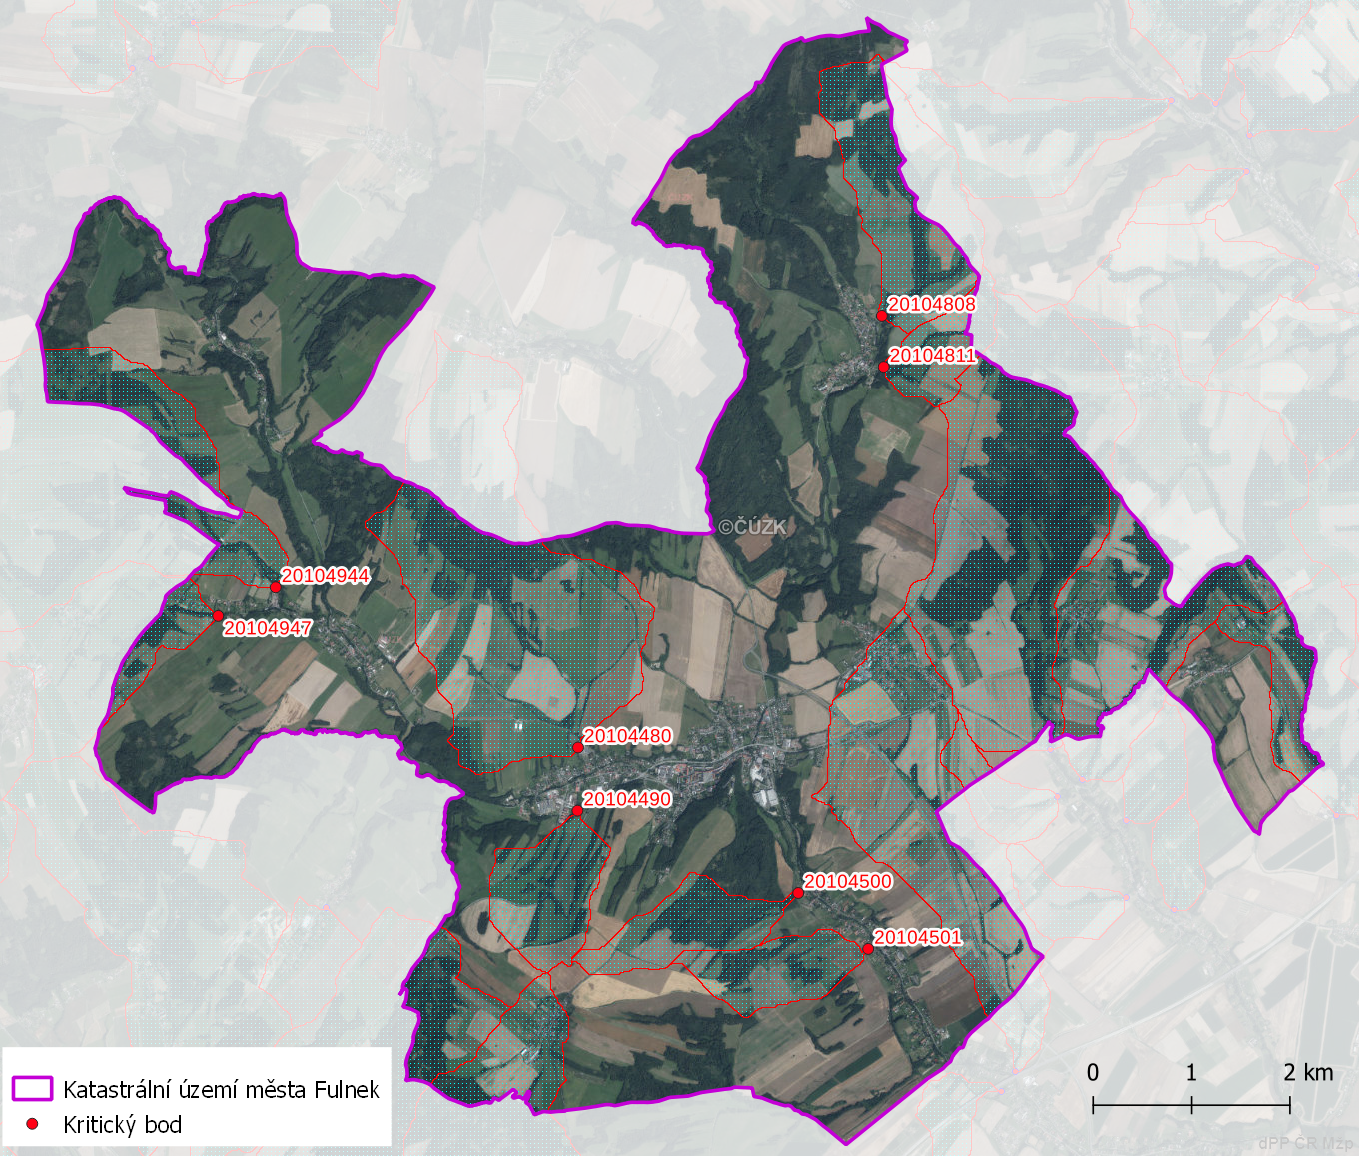 Zhodnocení vzniku přívalových povodní na území města Fulnek metodou kritických bodů